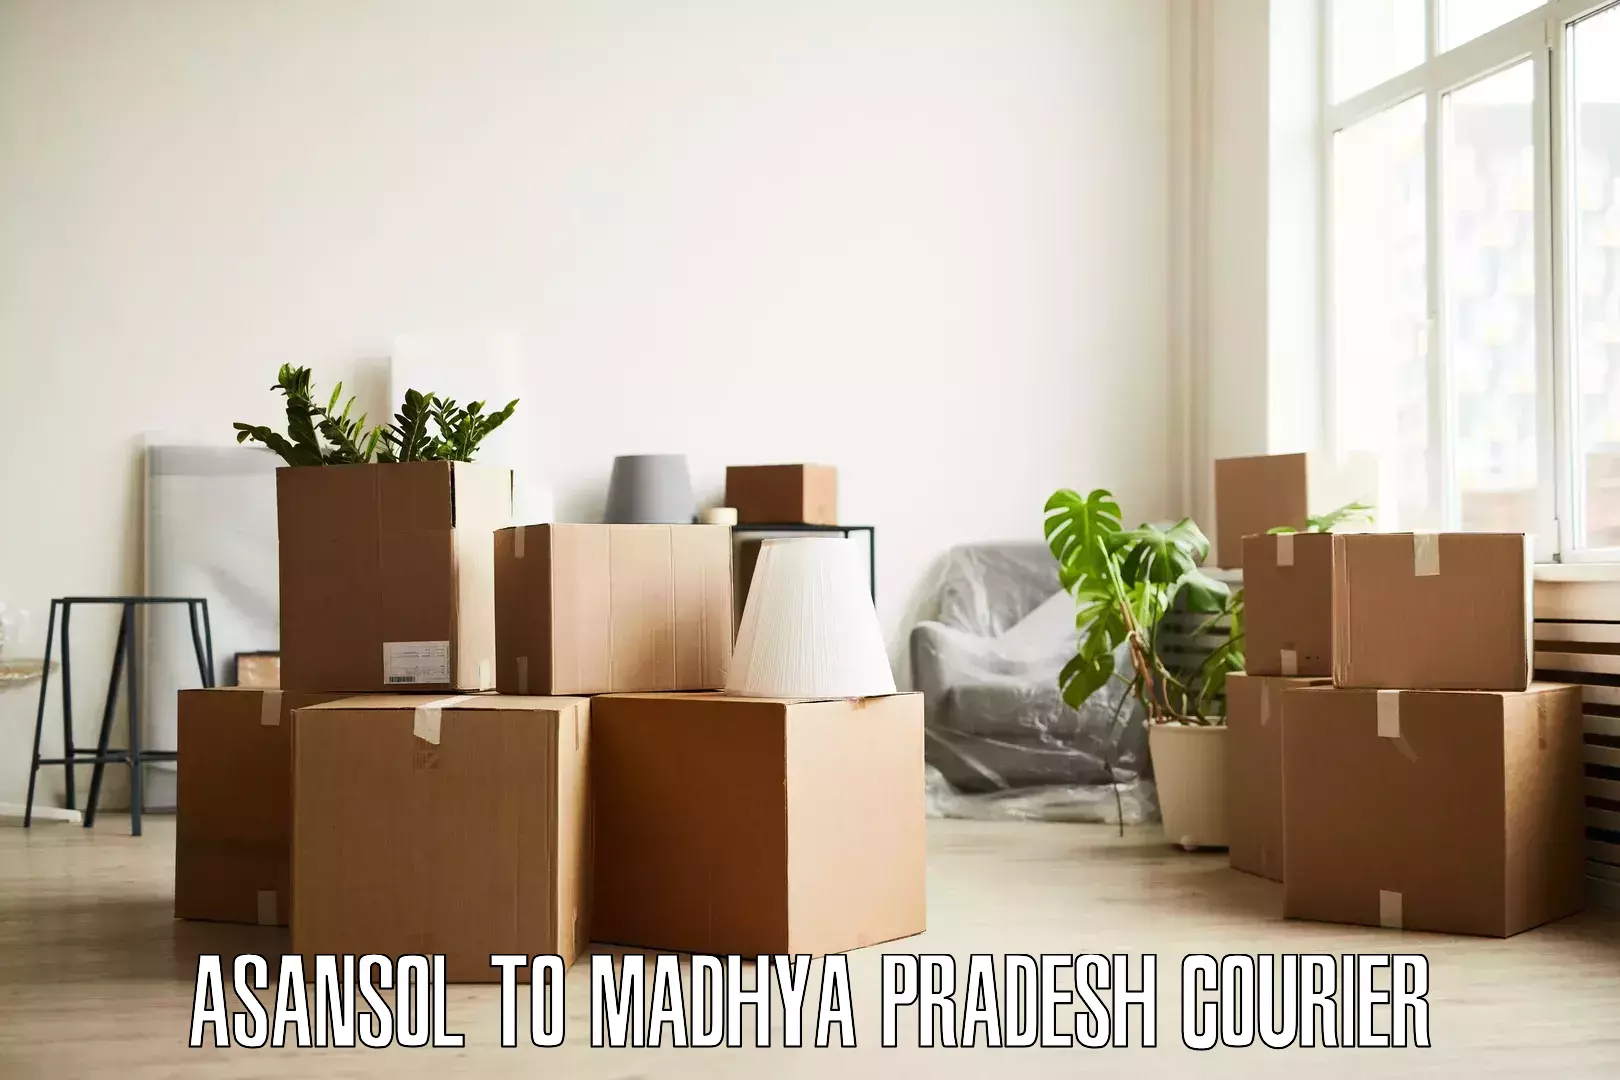 Professional packing services Asansol to Seoni Malwa